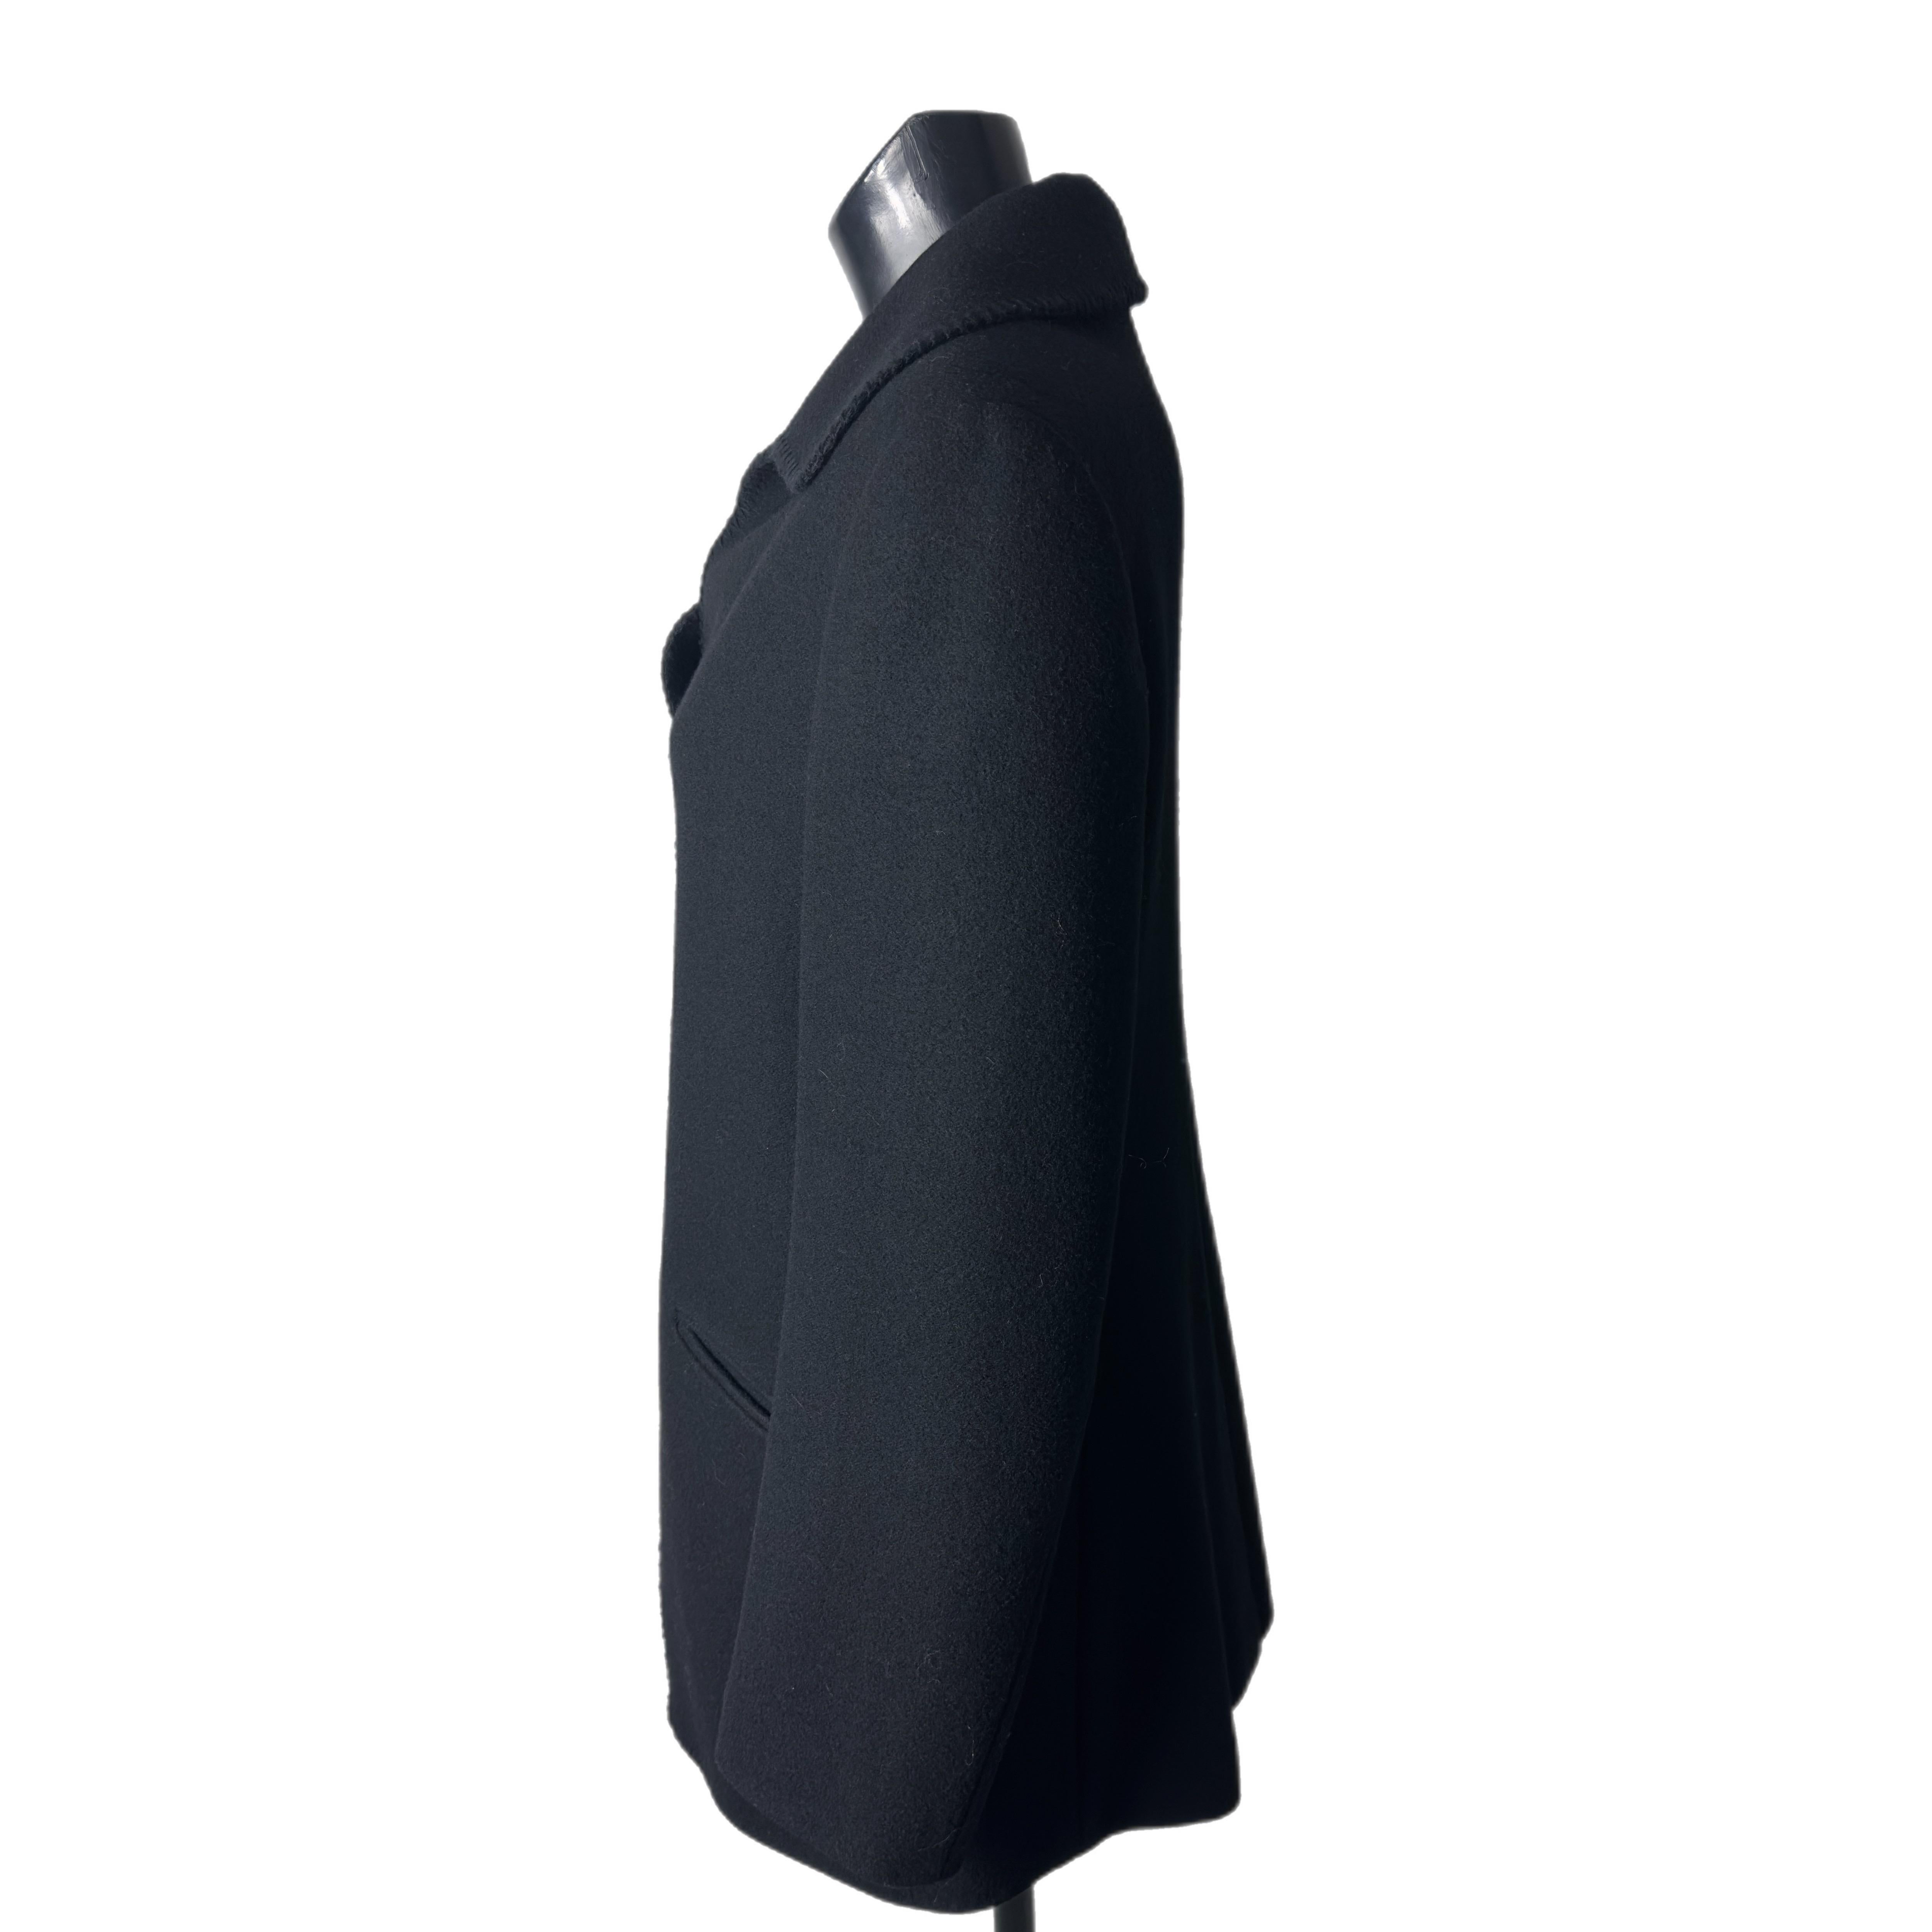 Raro ed iconico cappotto di una delle stiliste più amate Vivienne Westwood 
In lana nera con profili, collo arrotondato e due grandi tasche frontali.
Completano il capo i grandi bottoni logati, che vanno a chiudere la parte alta del capo mentre